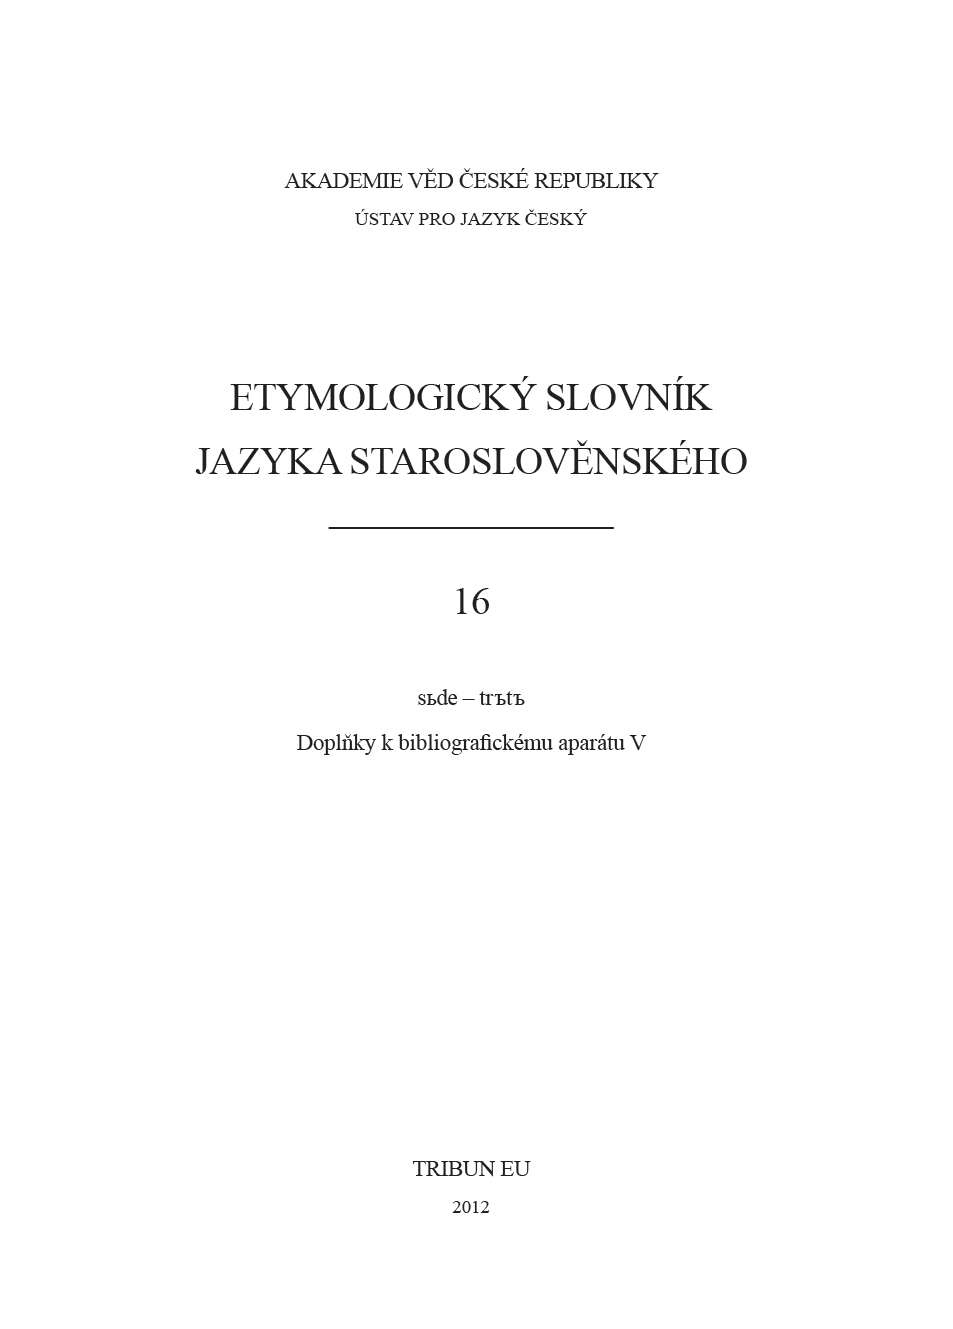 Etymologický slovník jazyka staroslověnského 16